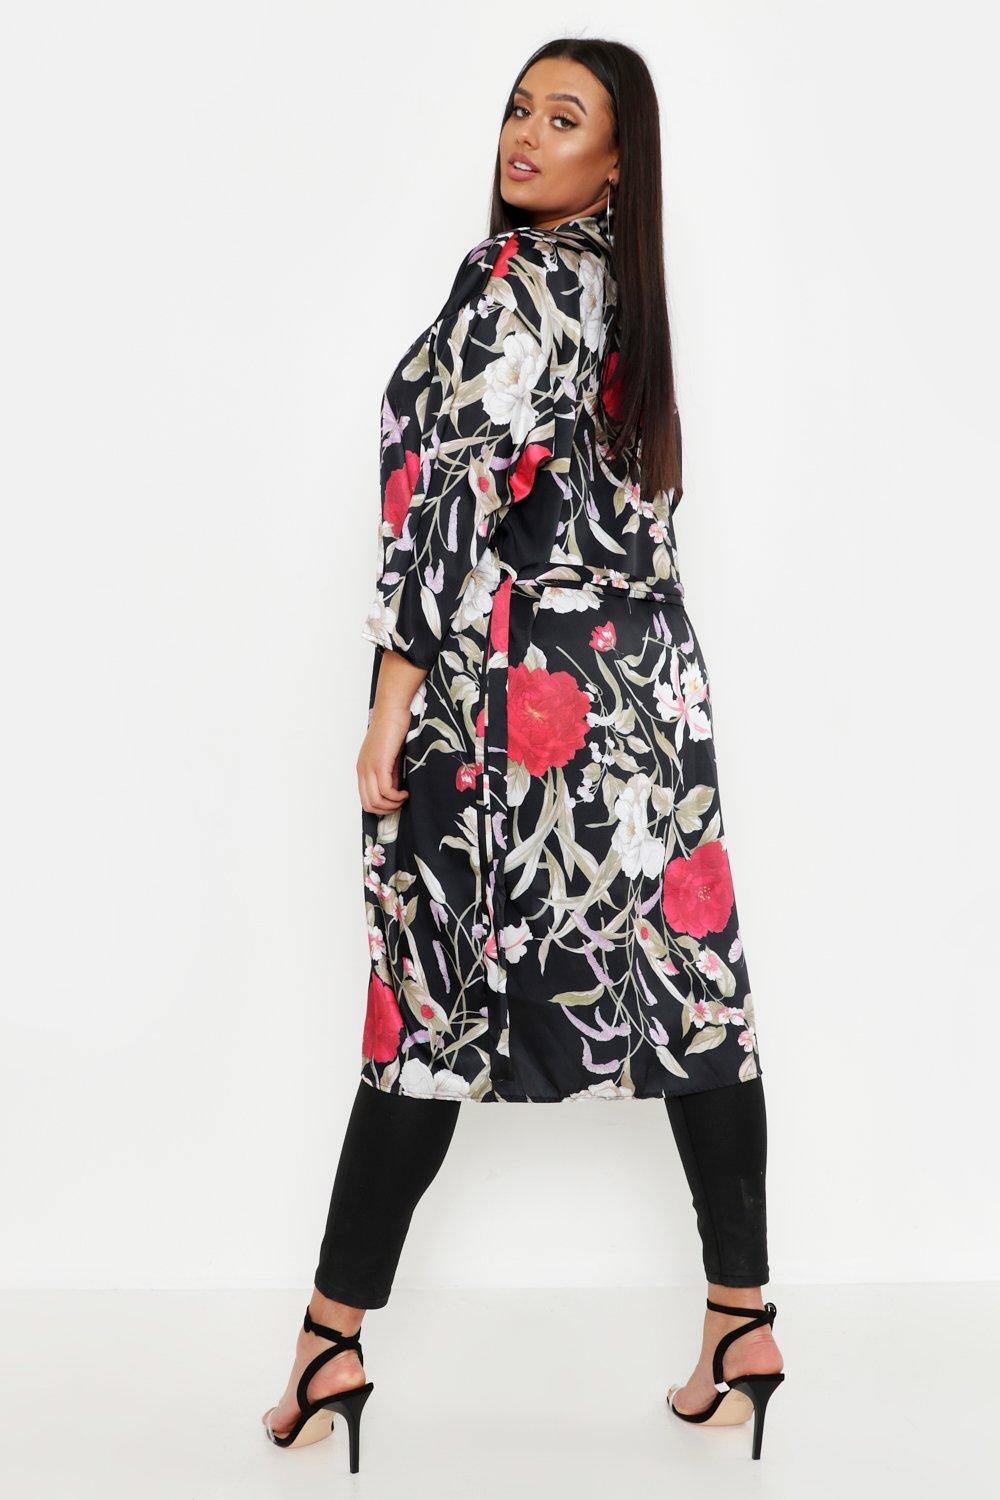 Boohoo Womens Plus Size Floral Kimono | eBay